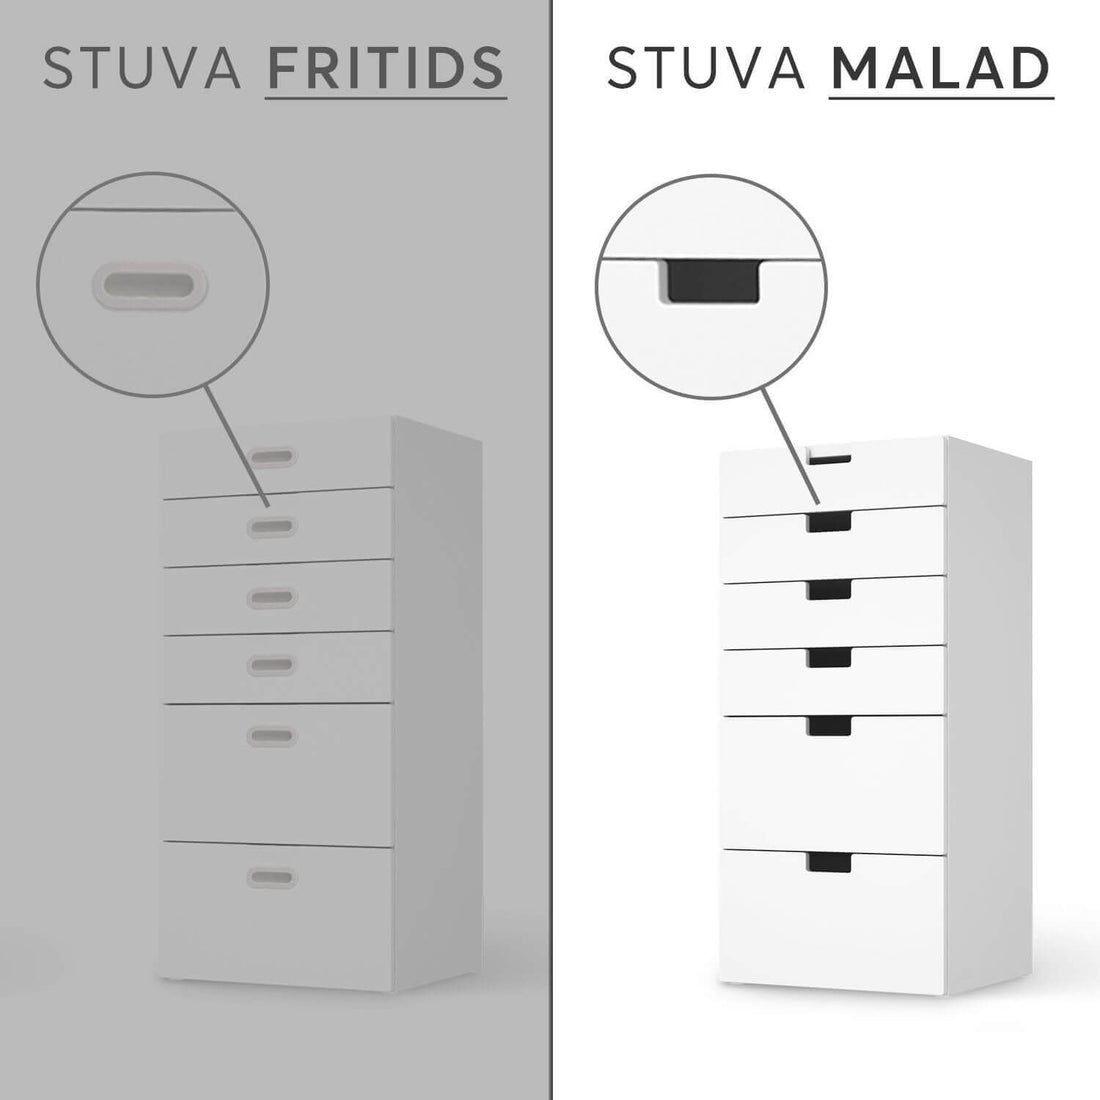 Vergleich IKEA Stuva Malad / Fritids - Flower Light